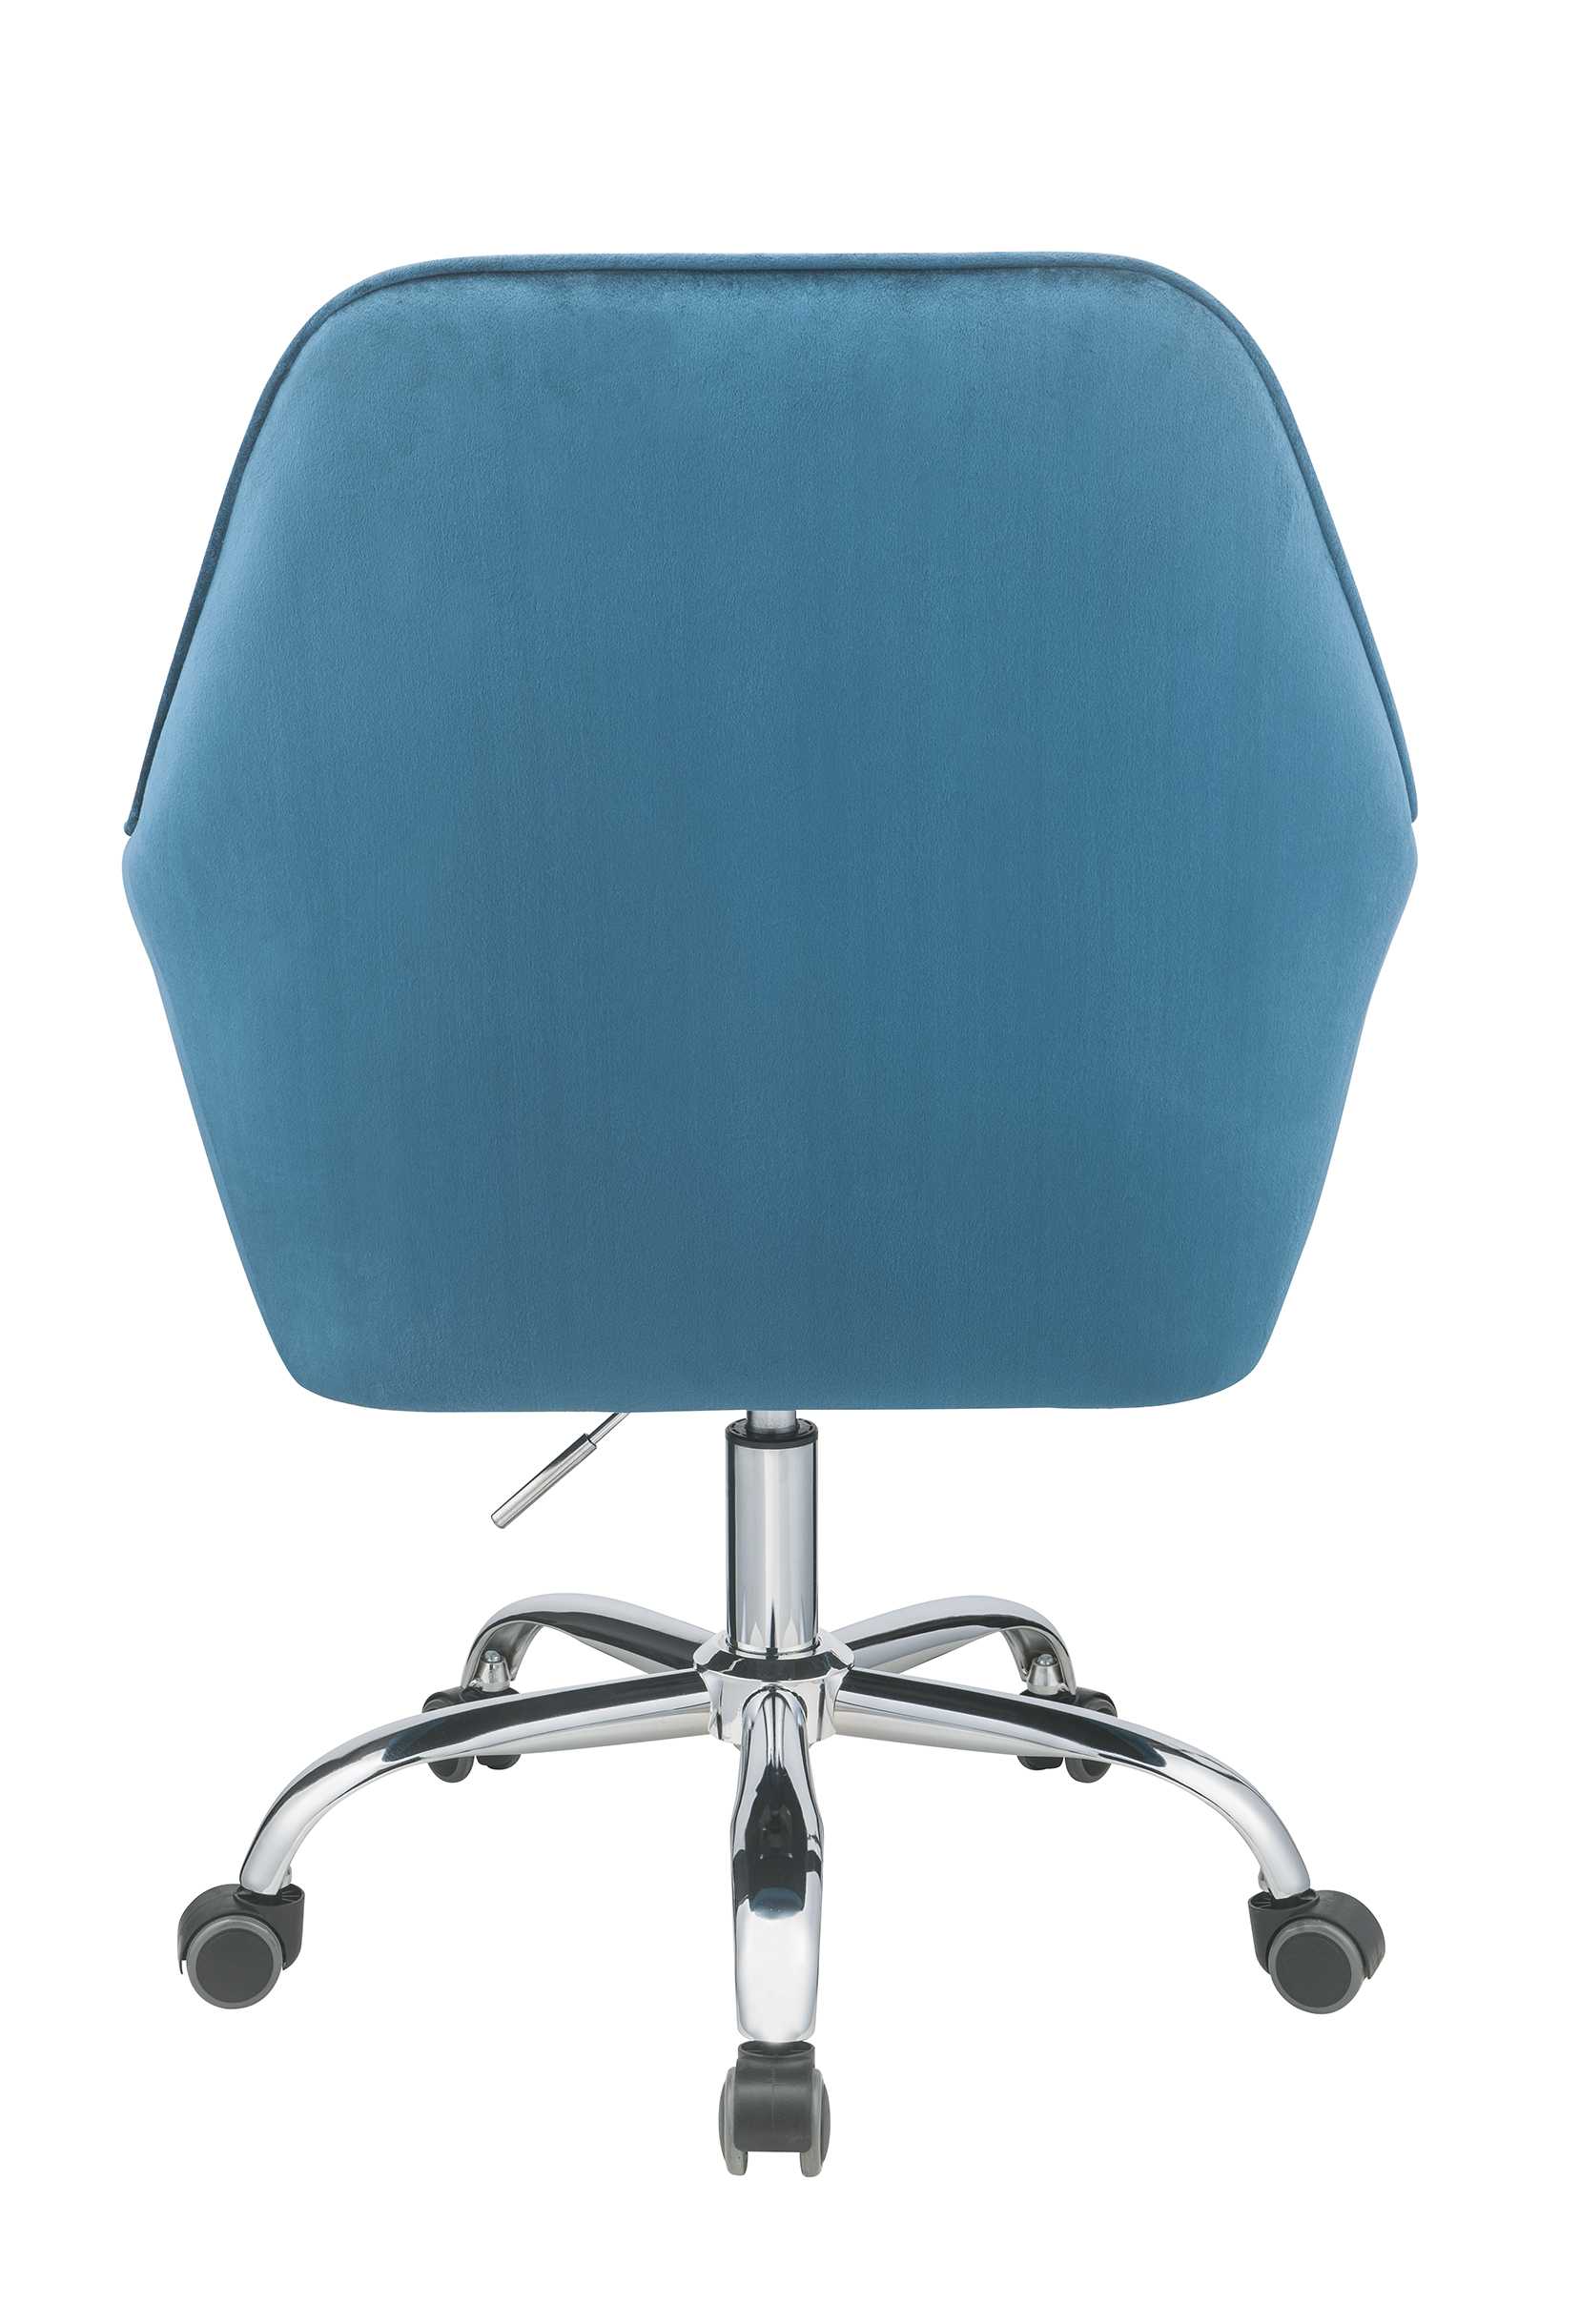 27" X 22" X 37" Peacock Velvet Office Chair